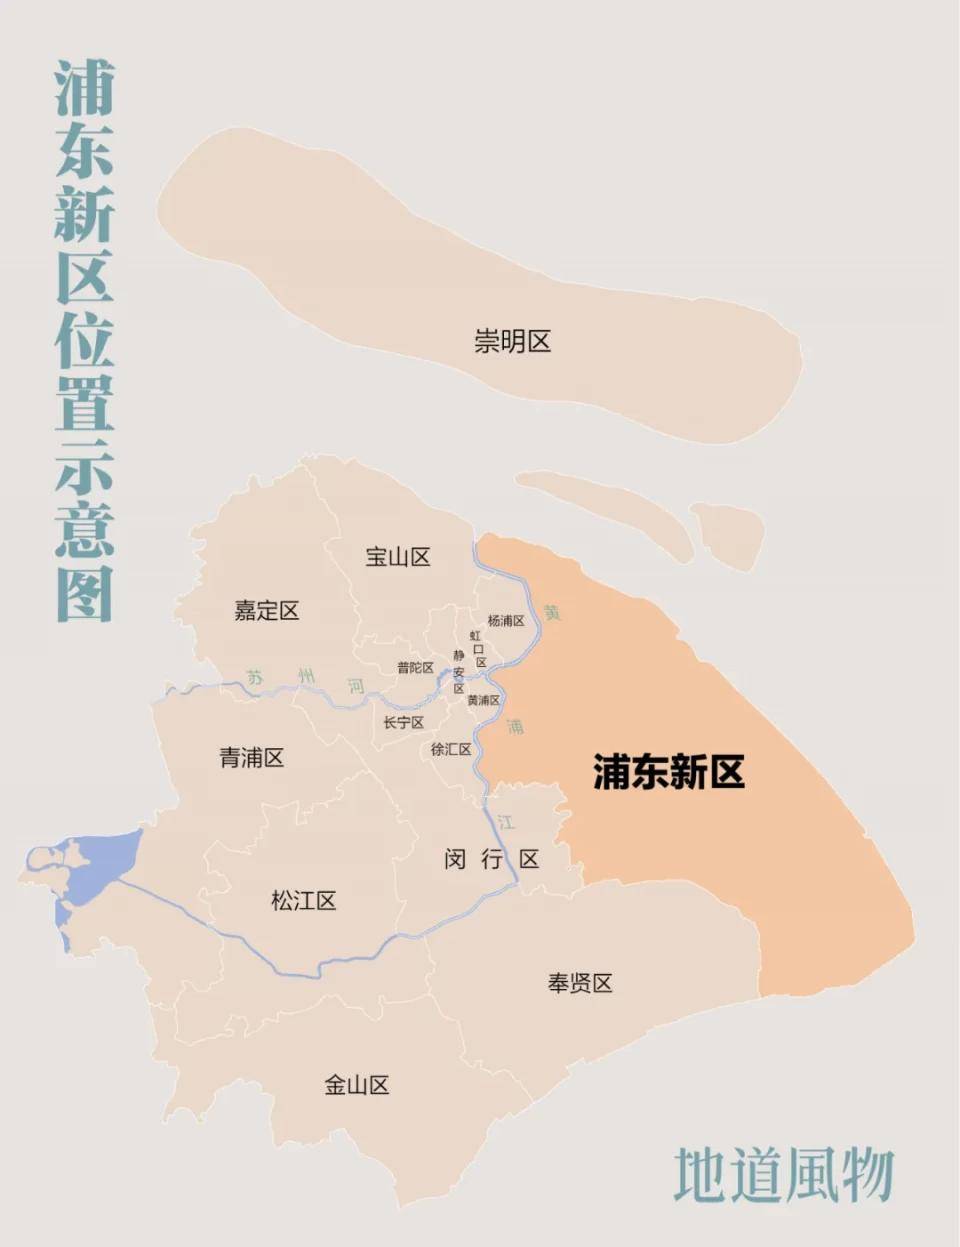 浦东新区地图板块图片